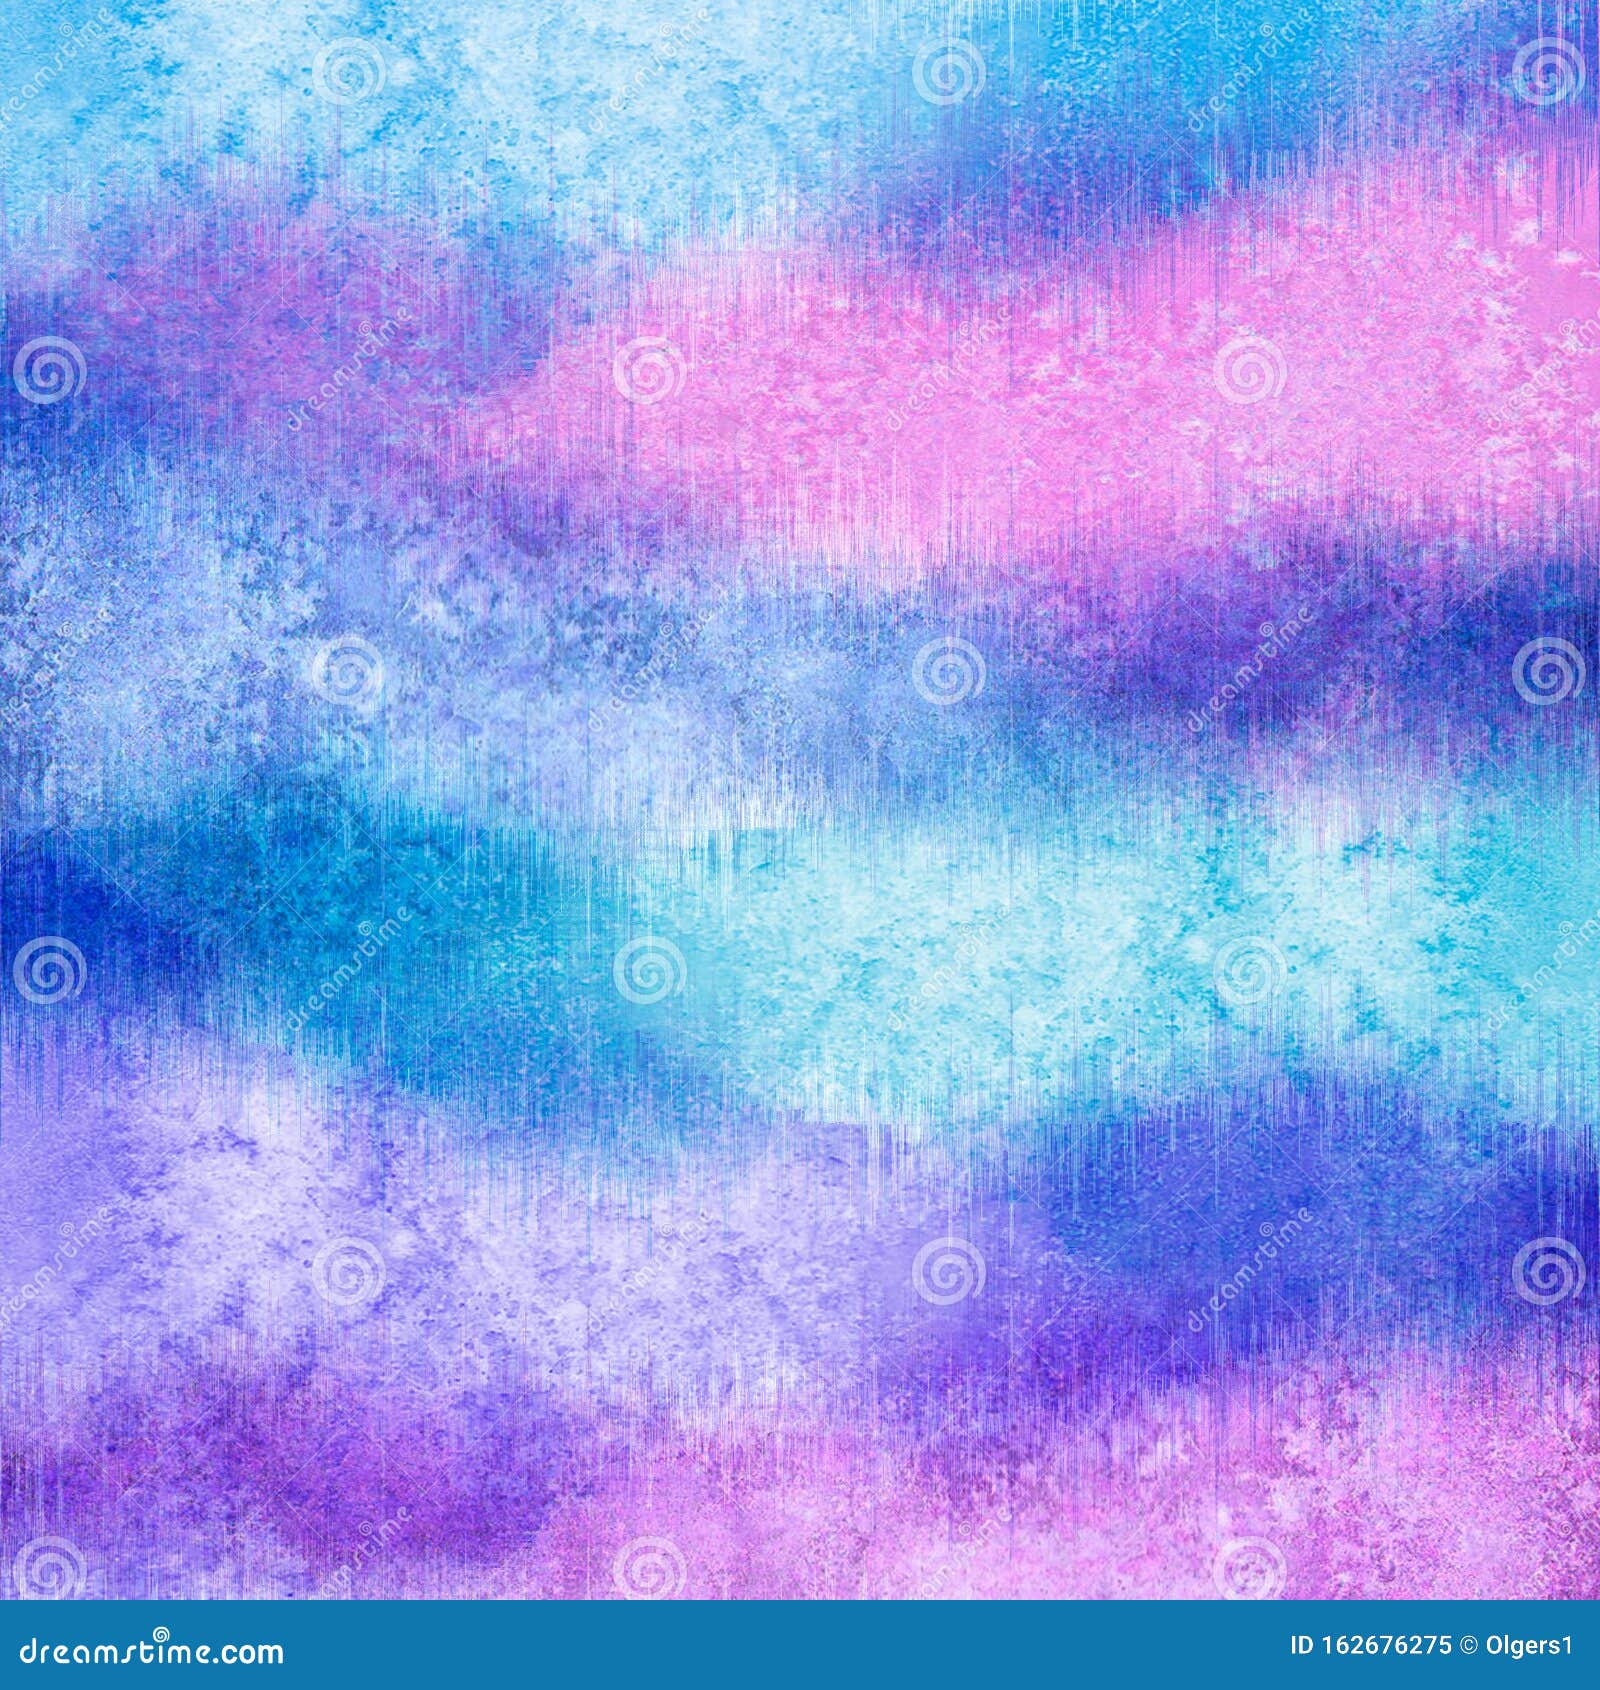 抽象水彩创意彩粉蓝茶紫背景库存图片 图片包括有抽象水彩创意彩粉蓝茶紫背景